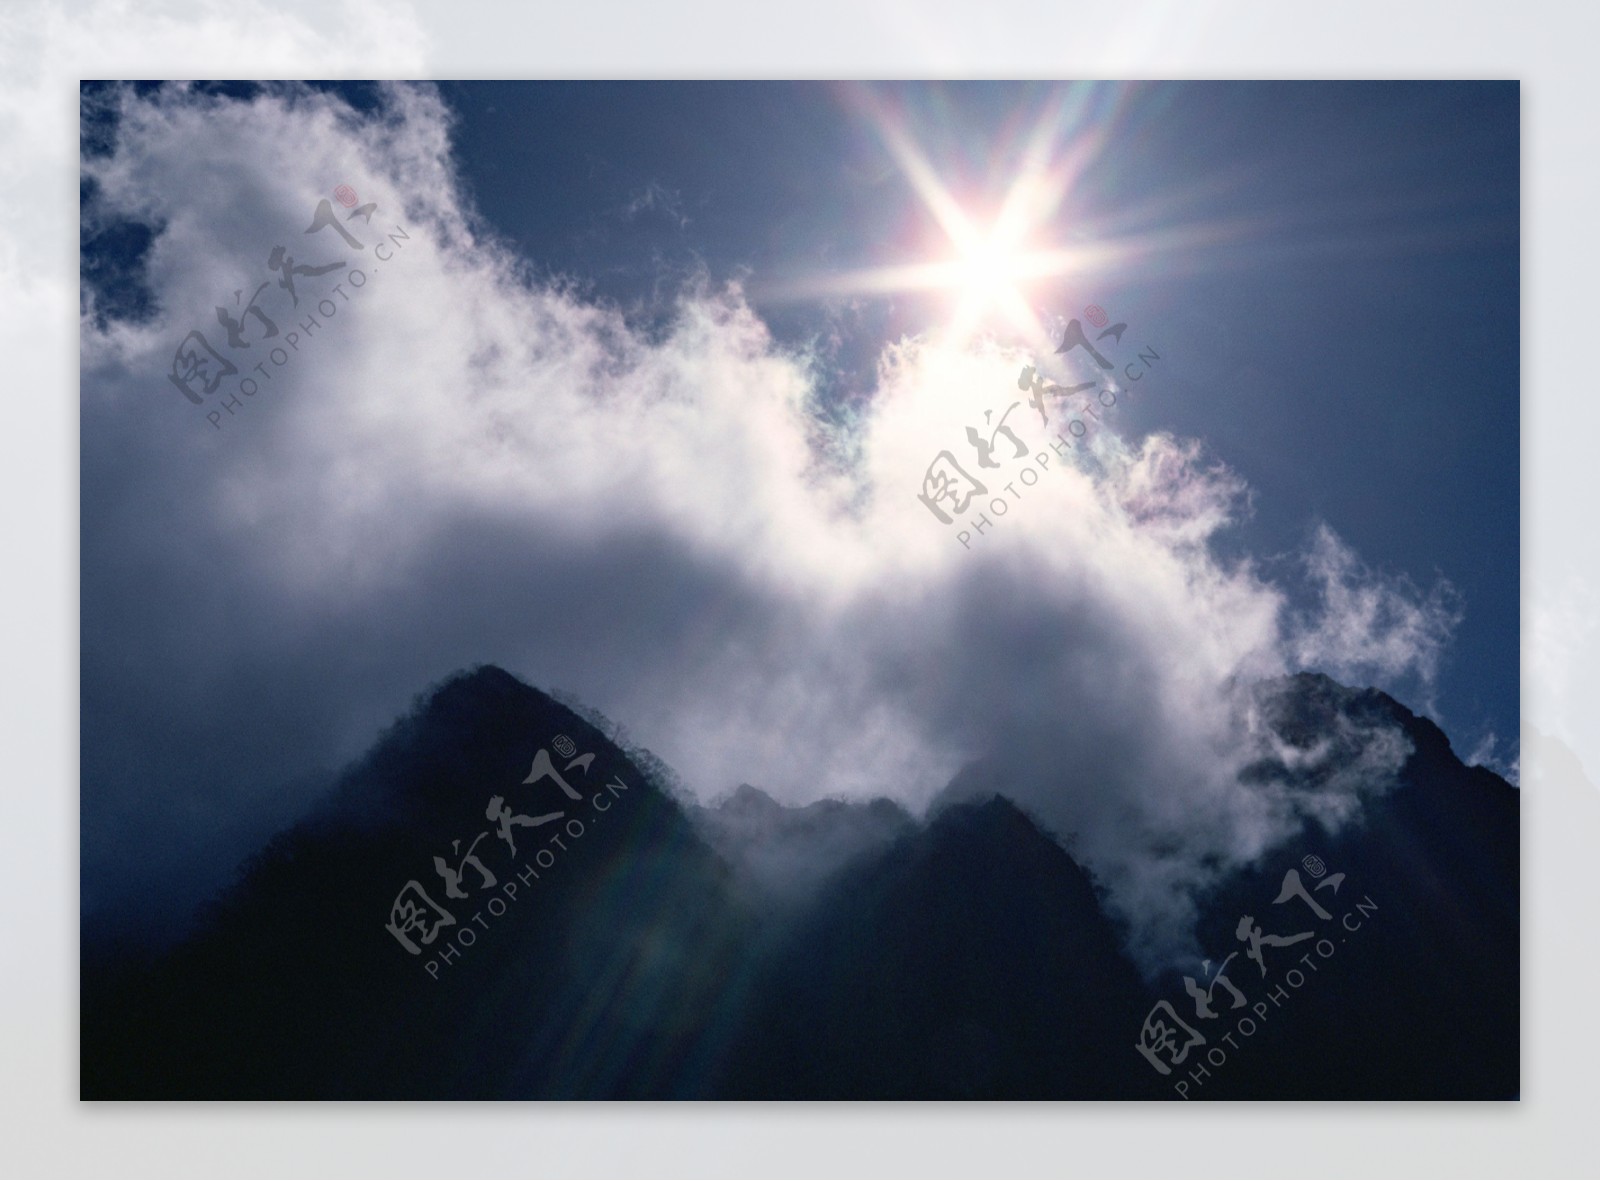 白云山峰风景图片